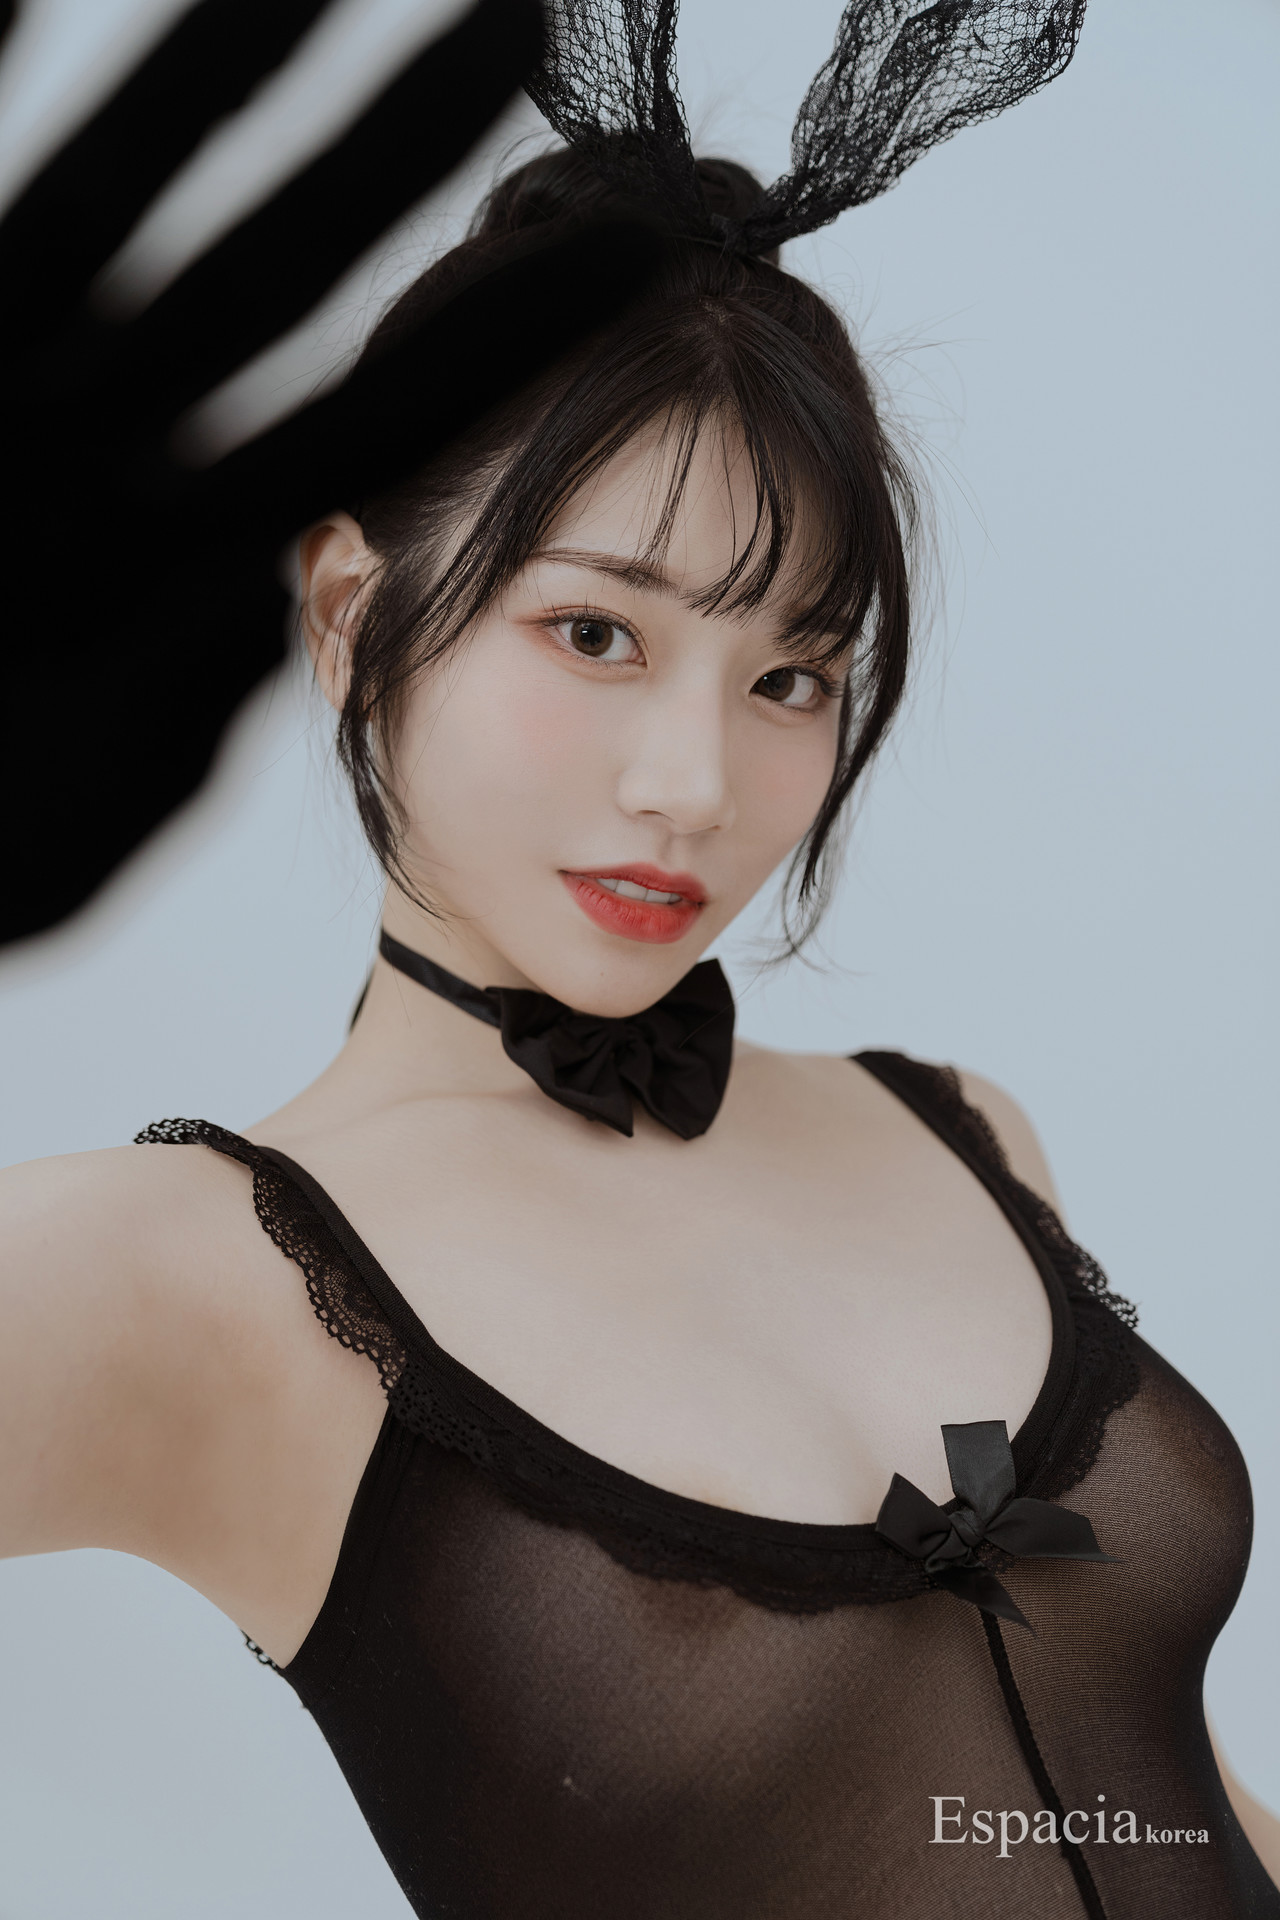 Saika Kawakita 河北彩花 Espacia Korea Exc 124 Set01 Share Erotic Asian Girl Picture And Livestream